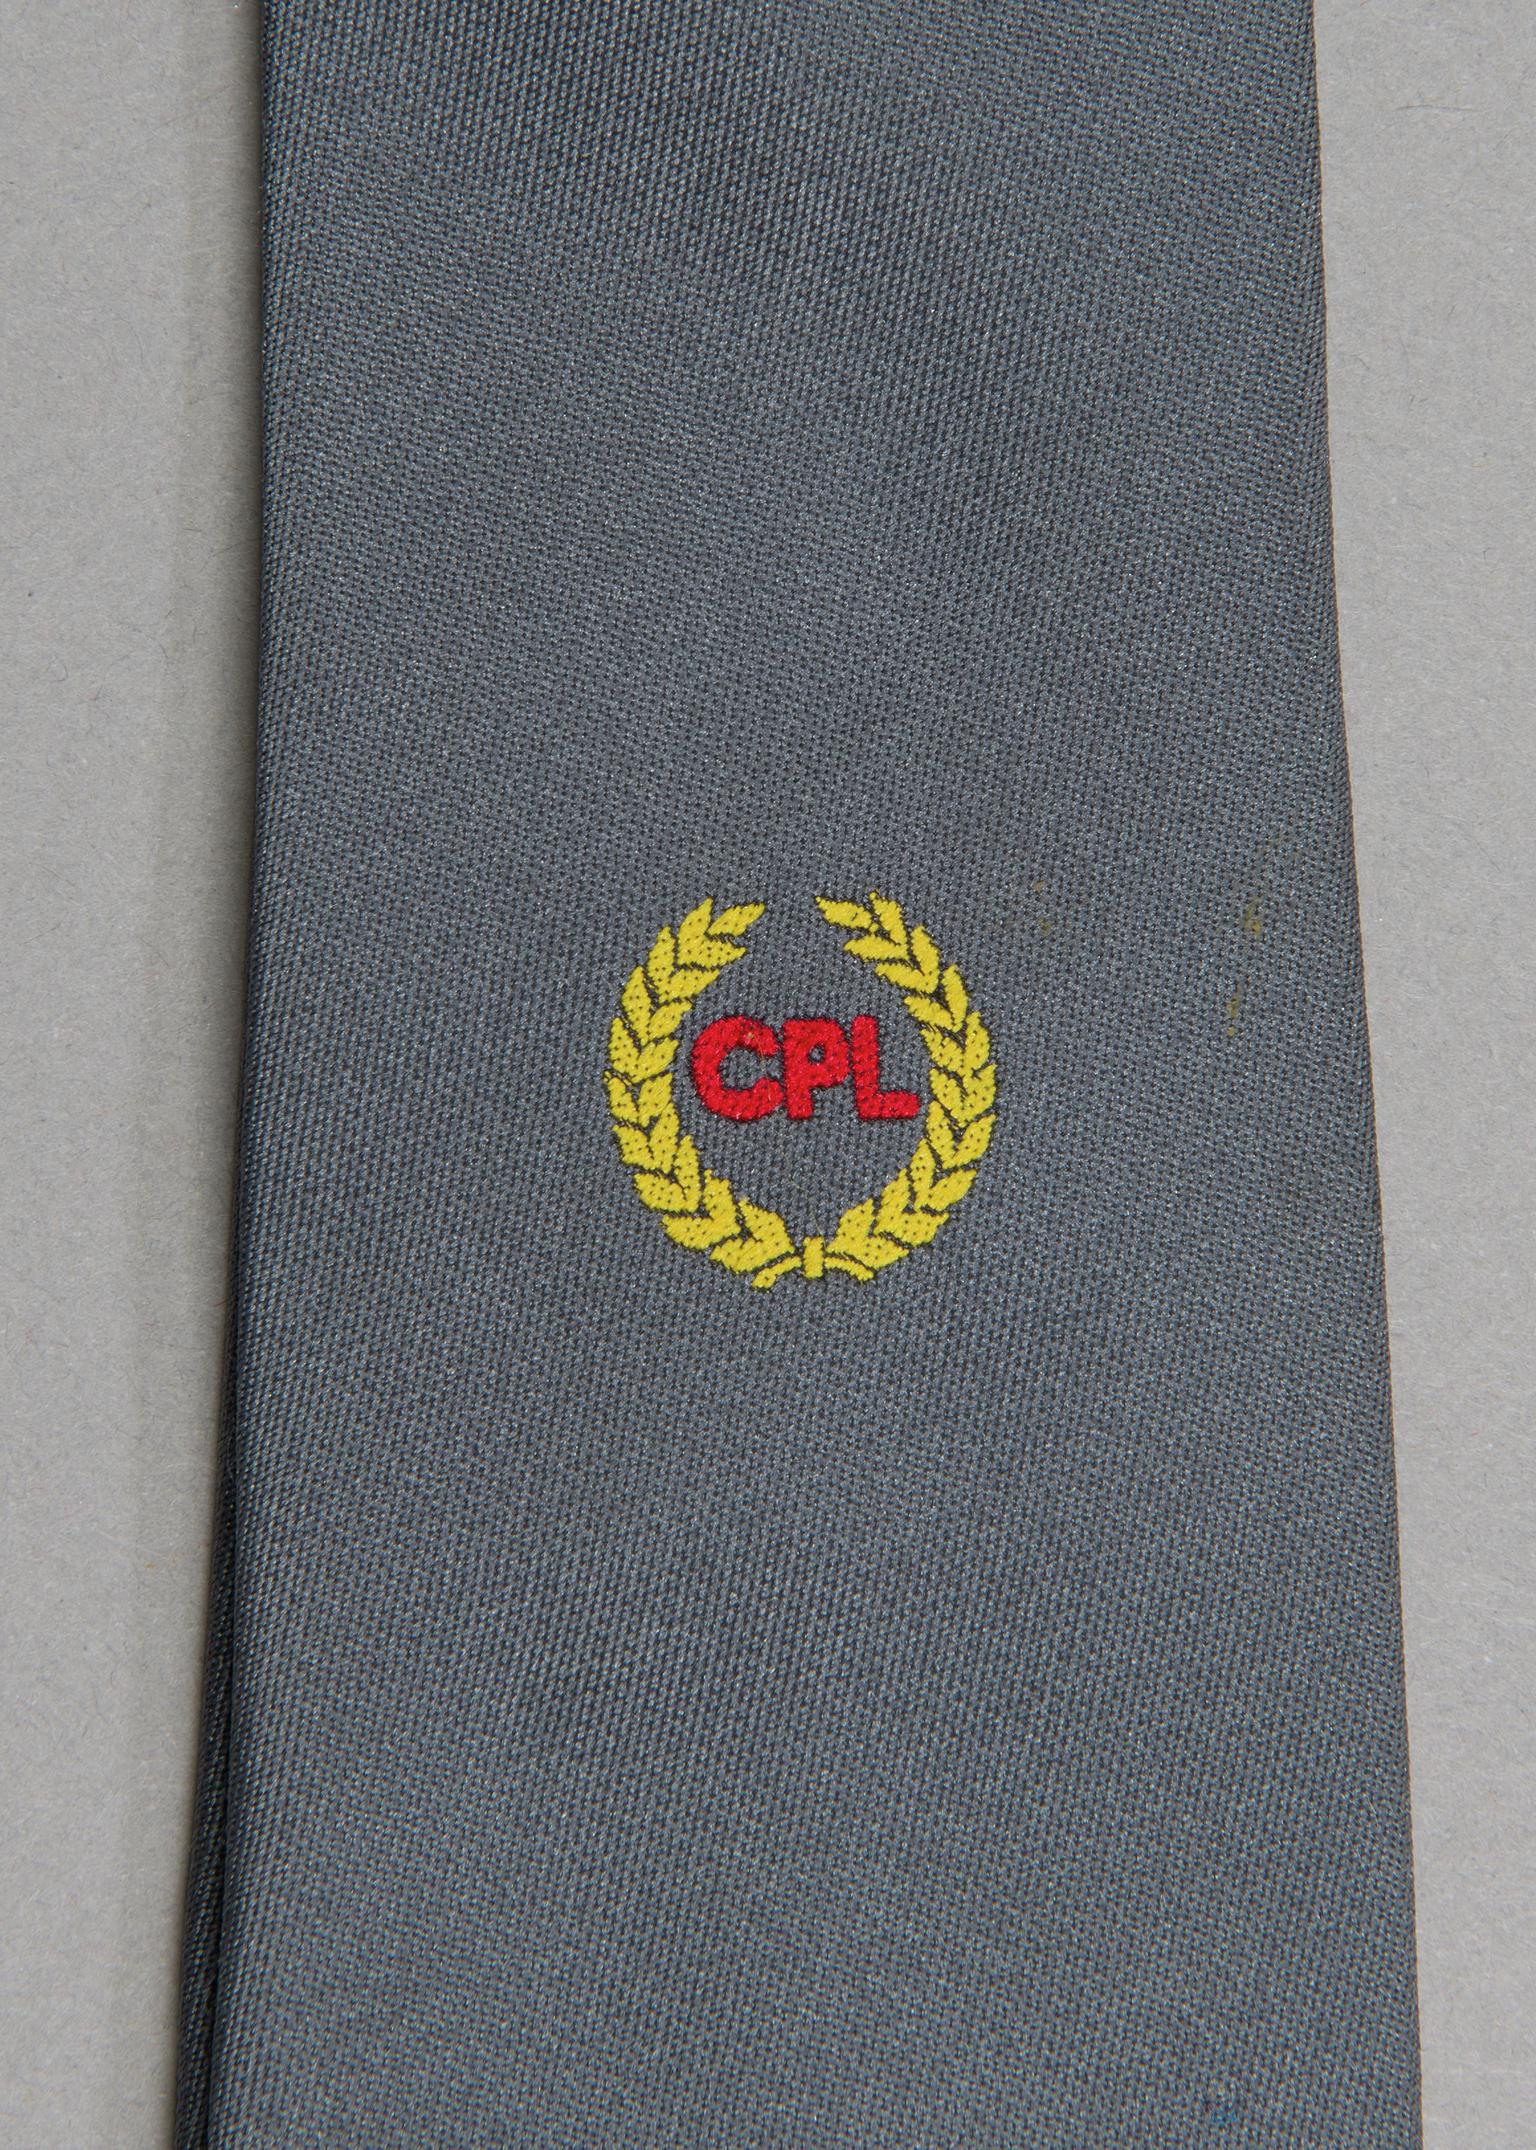 CPL Phurnacite, necktie